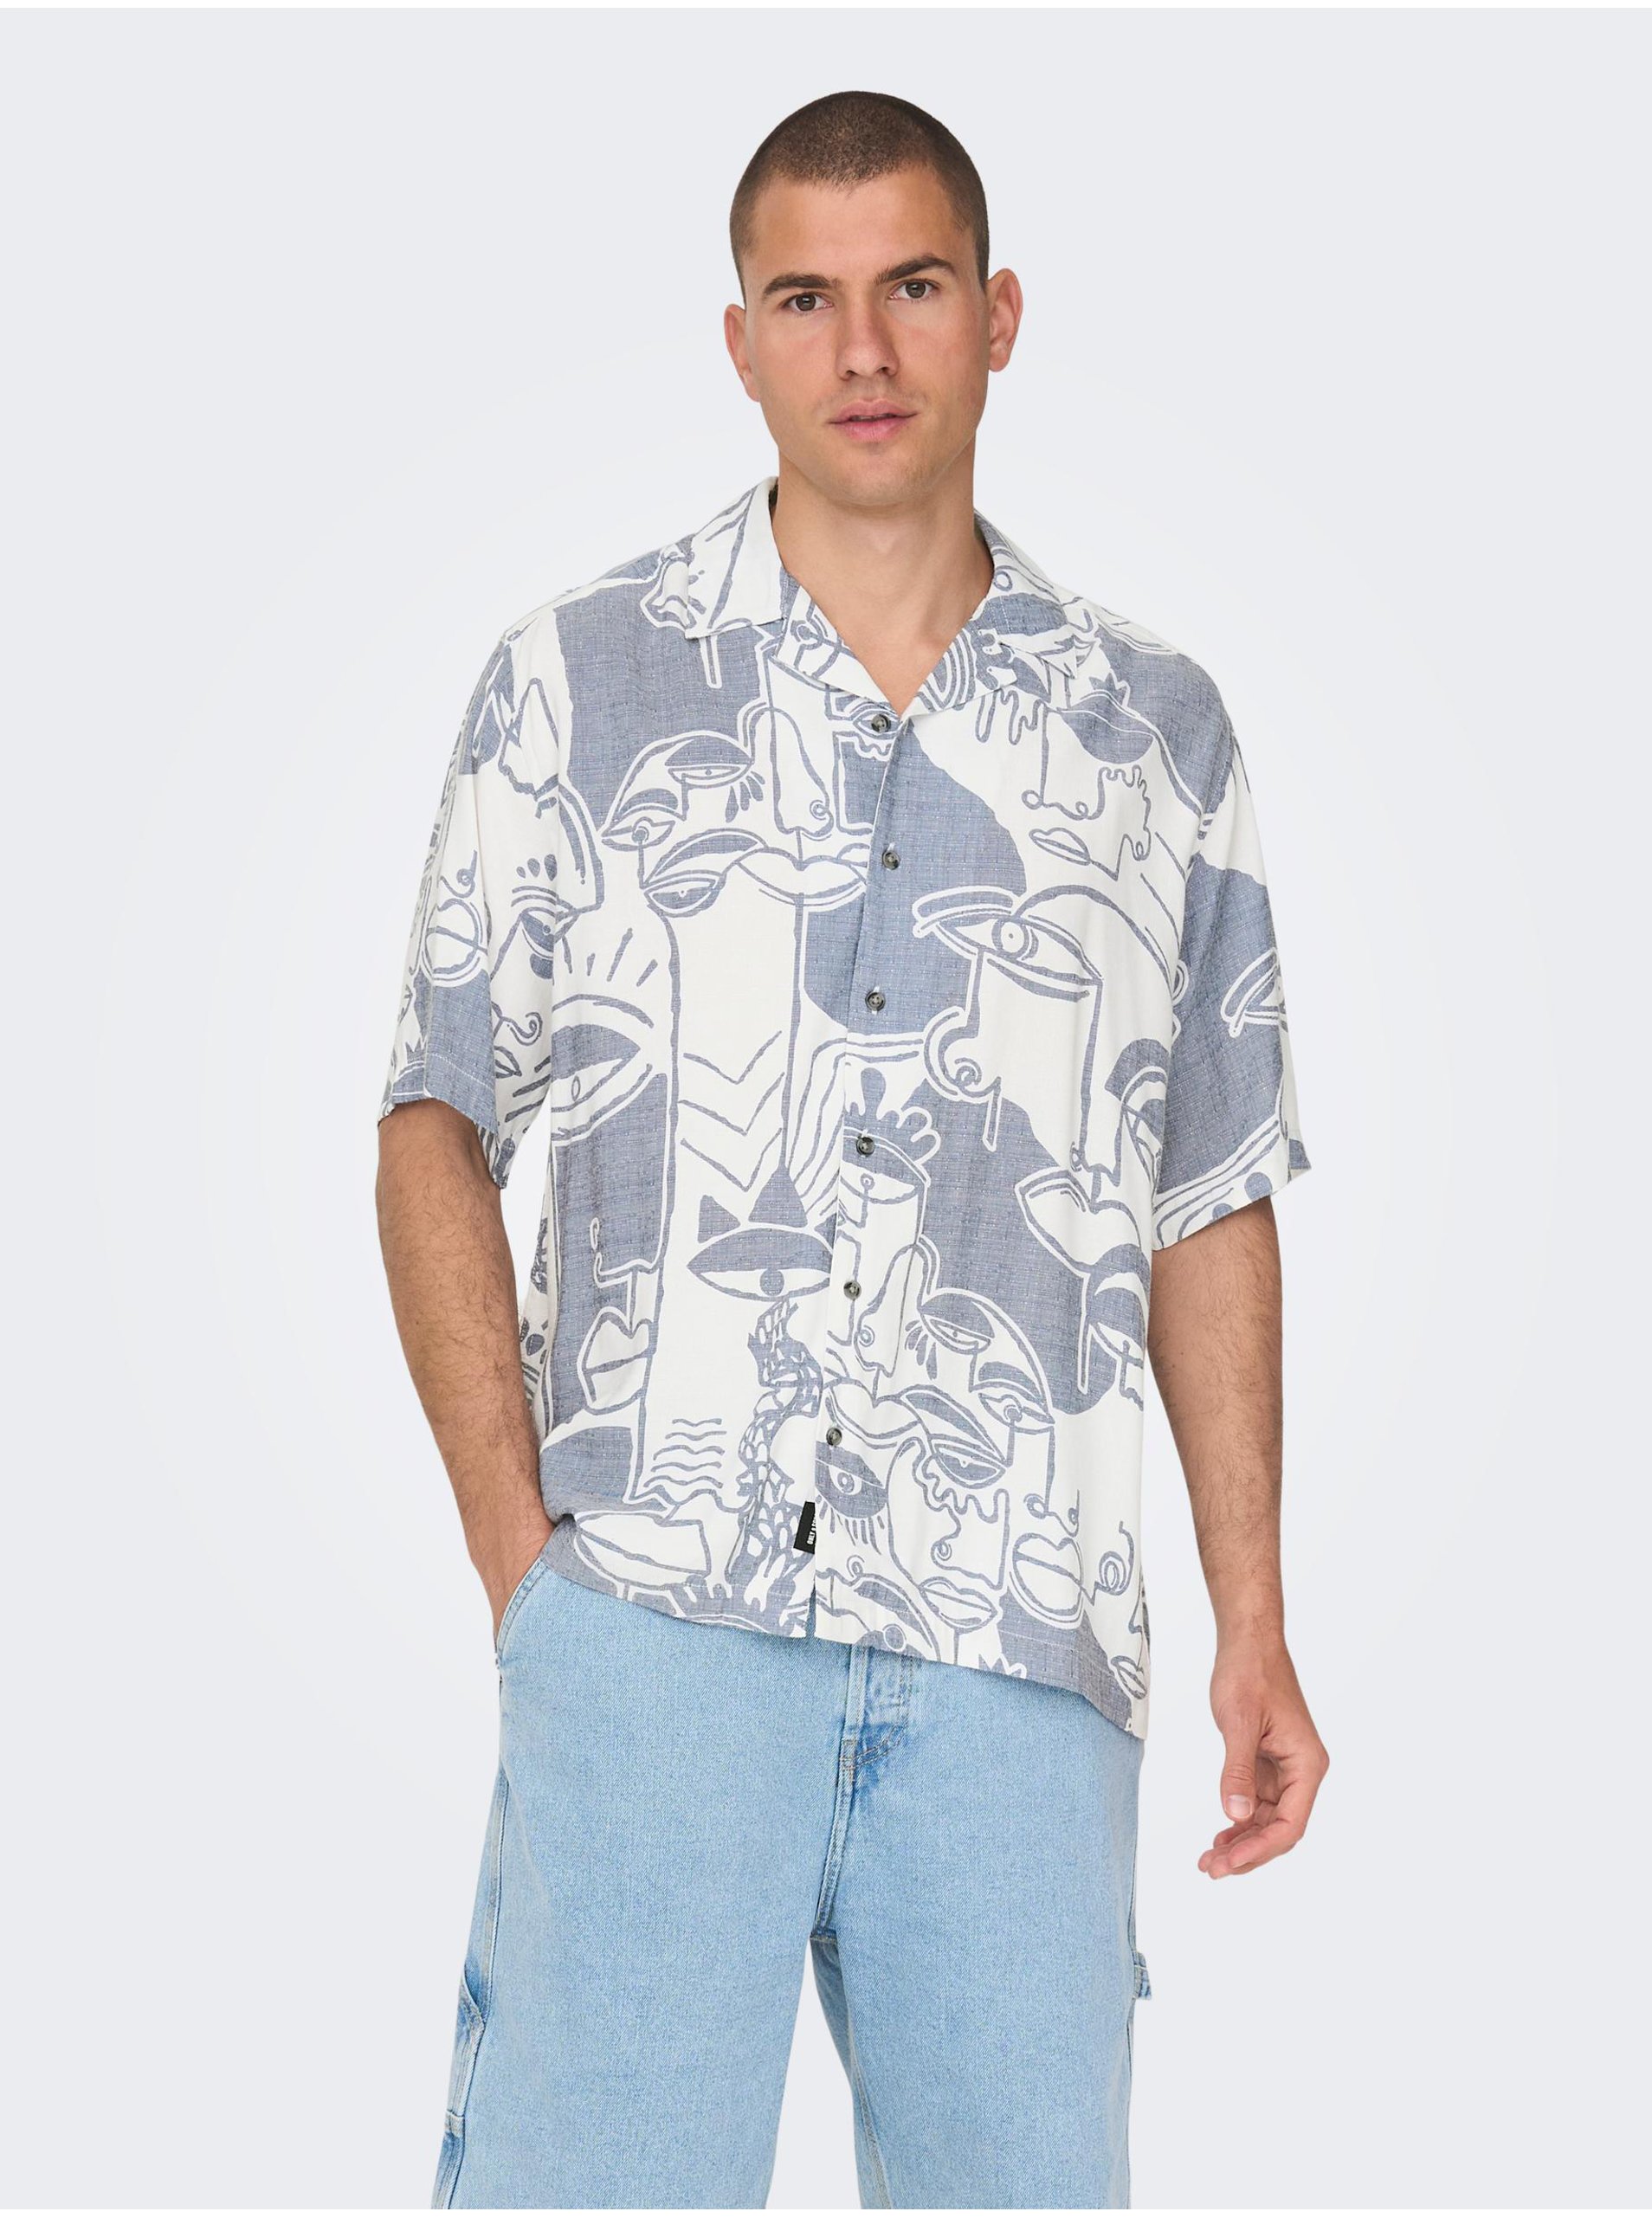 E-shop Bílo-modrá pánská vzorovaná košile s krátkým rukávem ONLY & SONS Den